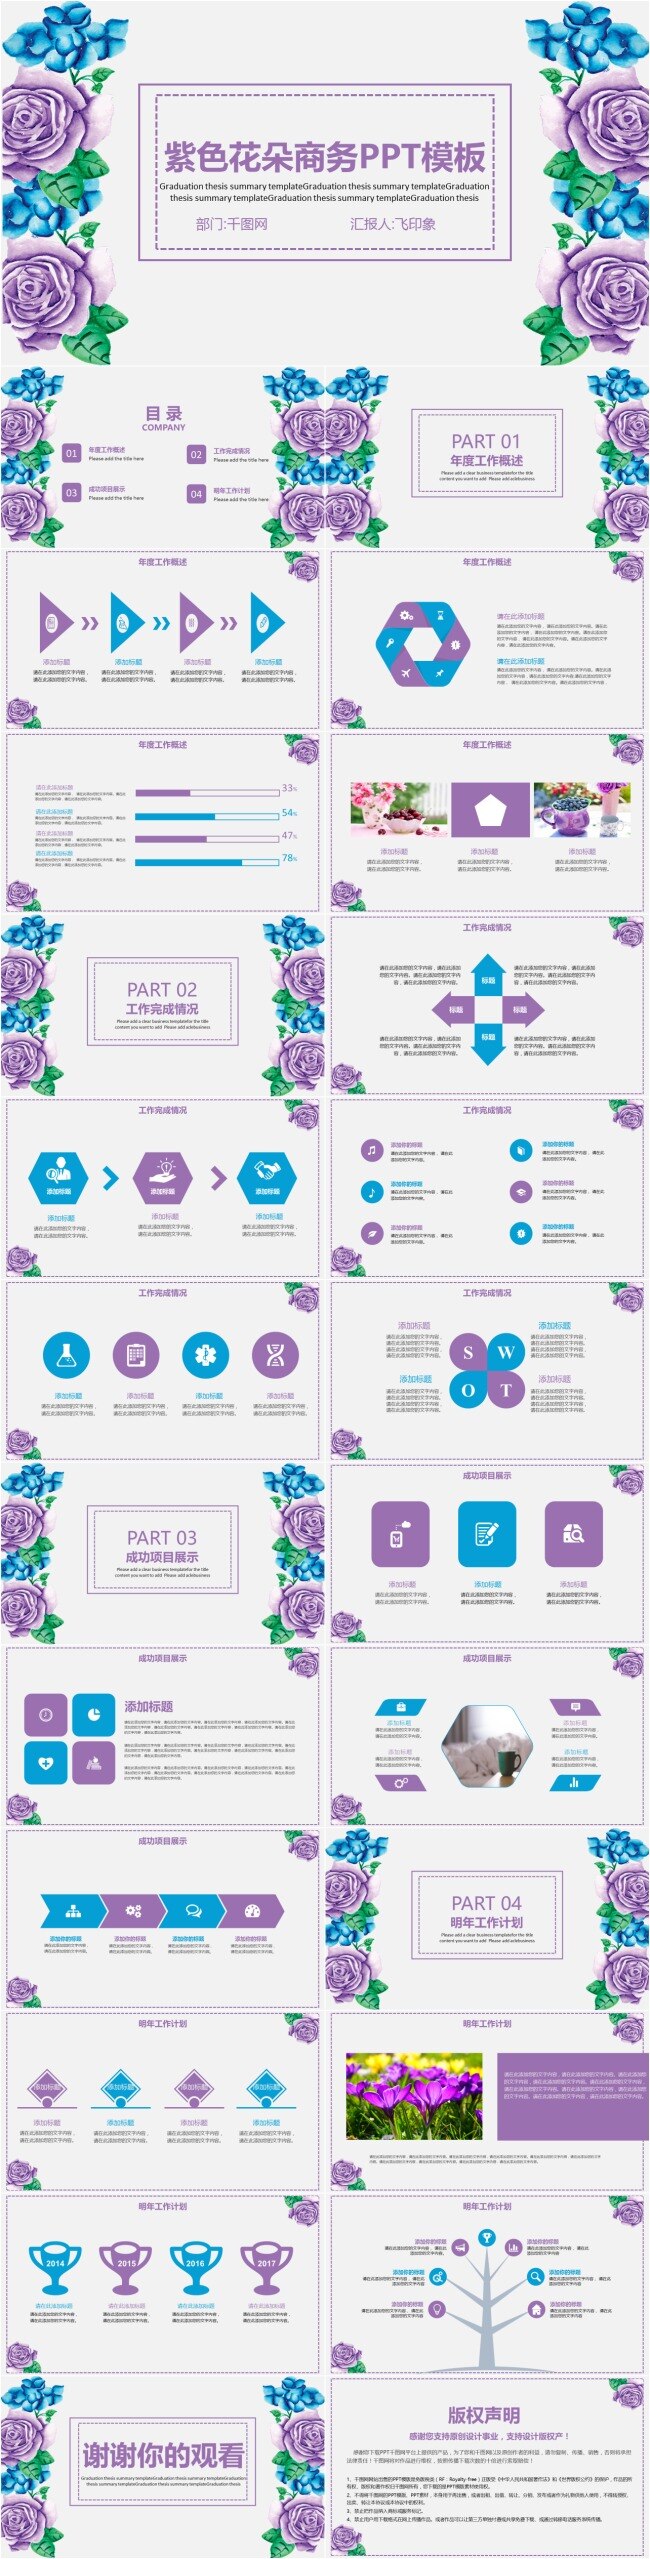 紫色 花朵 商务 模板 商务简约 述职报告 职业规划 ppt模板